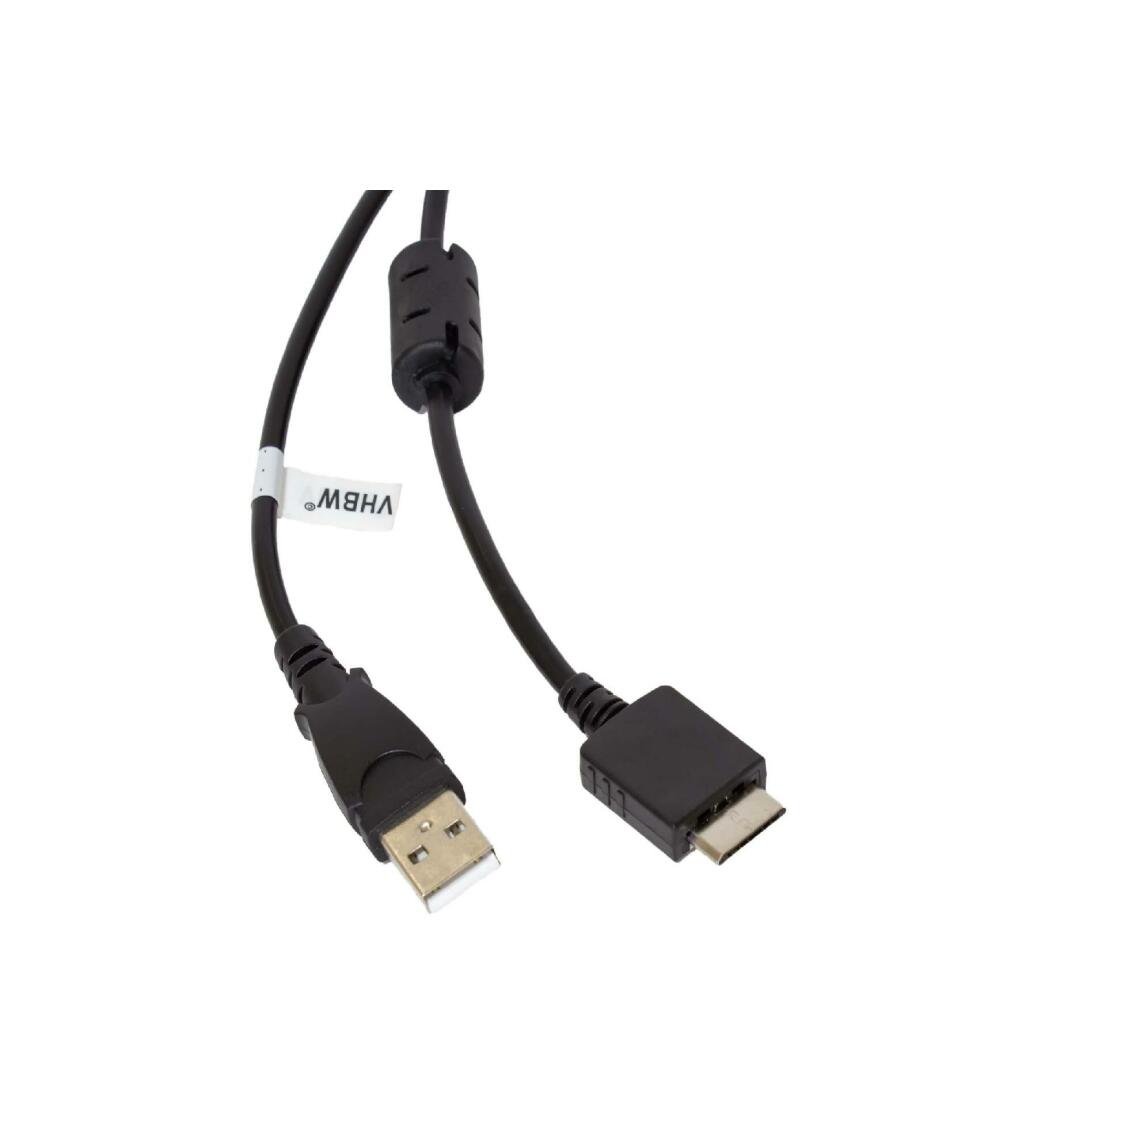 Vhbw - vhbw câble de données USB (type A sur lecteur MP3) câble de chargement compatible avec Sony Walkman NW-A828, NW-A829 lecteur MP3 - noir, 150cm - Alimentation modulaire